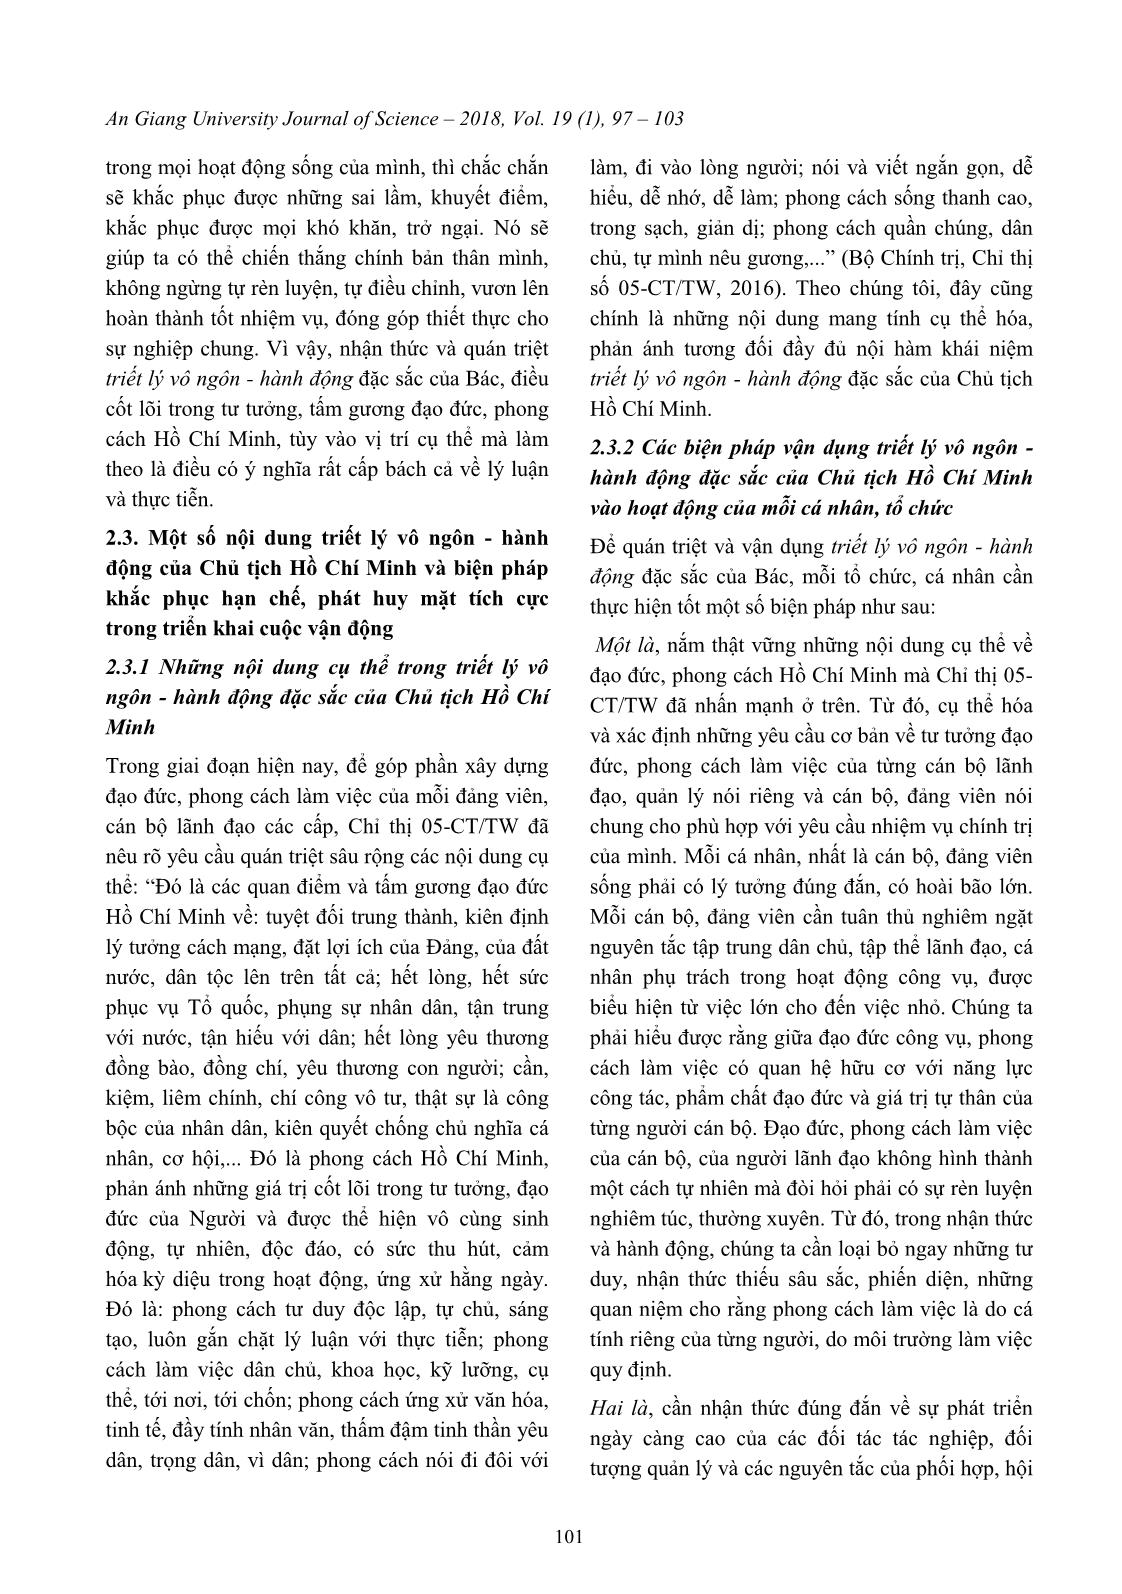 Vận dụng triết lý vô ngôn - Hành động của Bác Hồ trong triển khai “Học tập và làm theo tư tưởng, tấm gương đạo đức, phong cách Hồ Chí Minh” trang 5